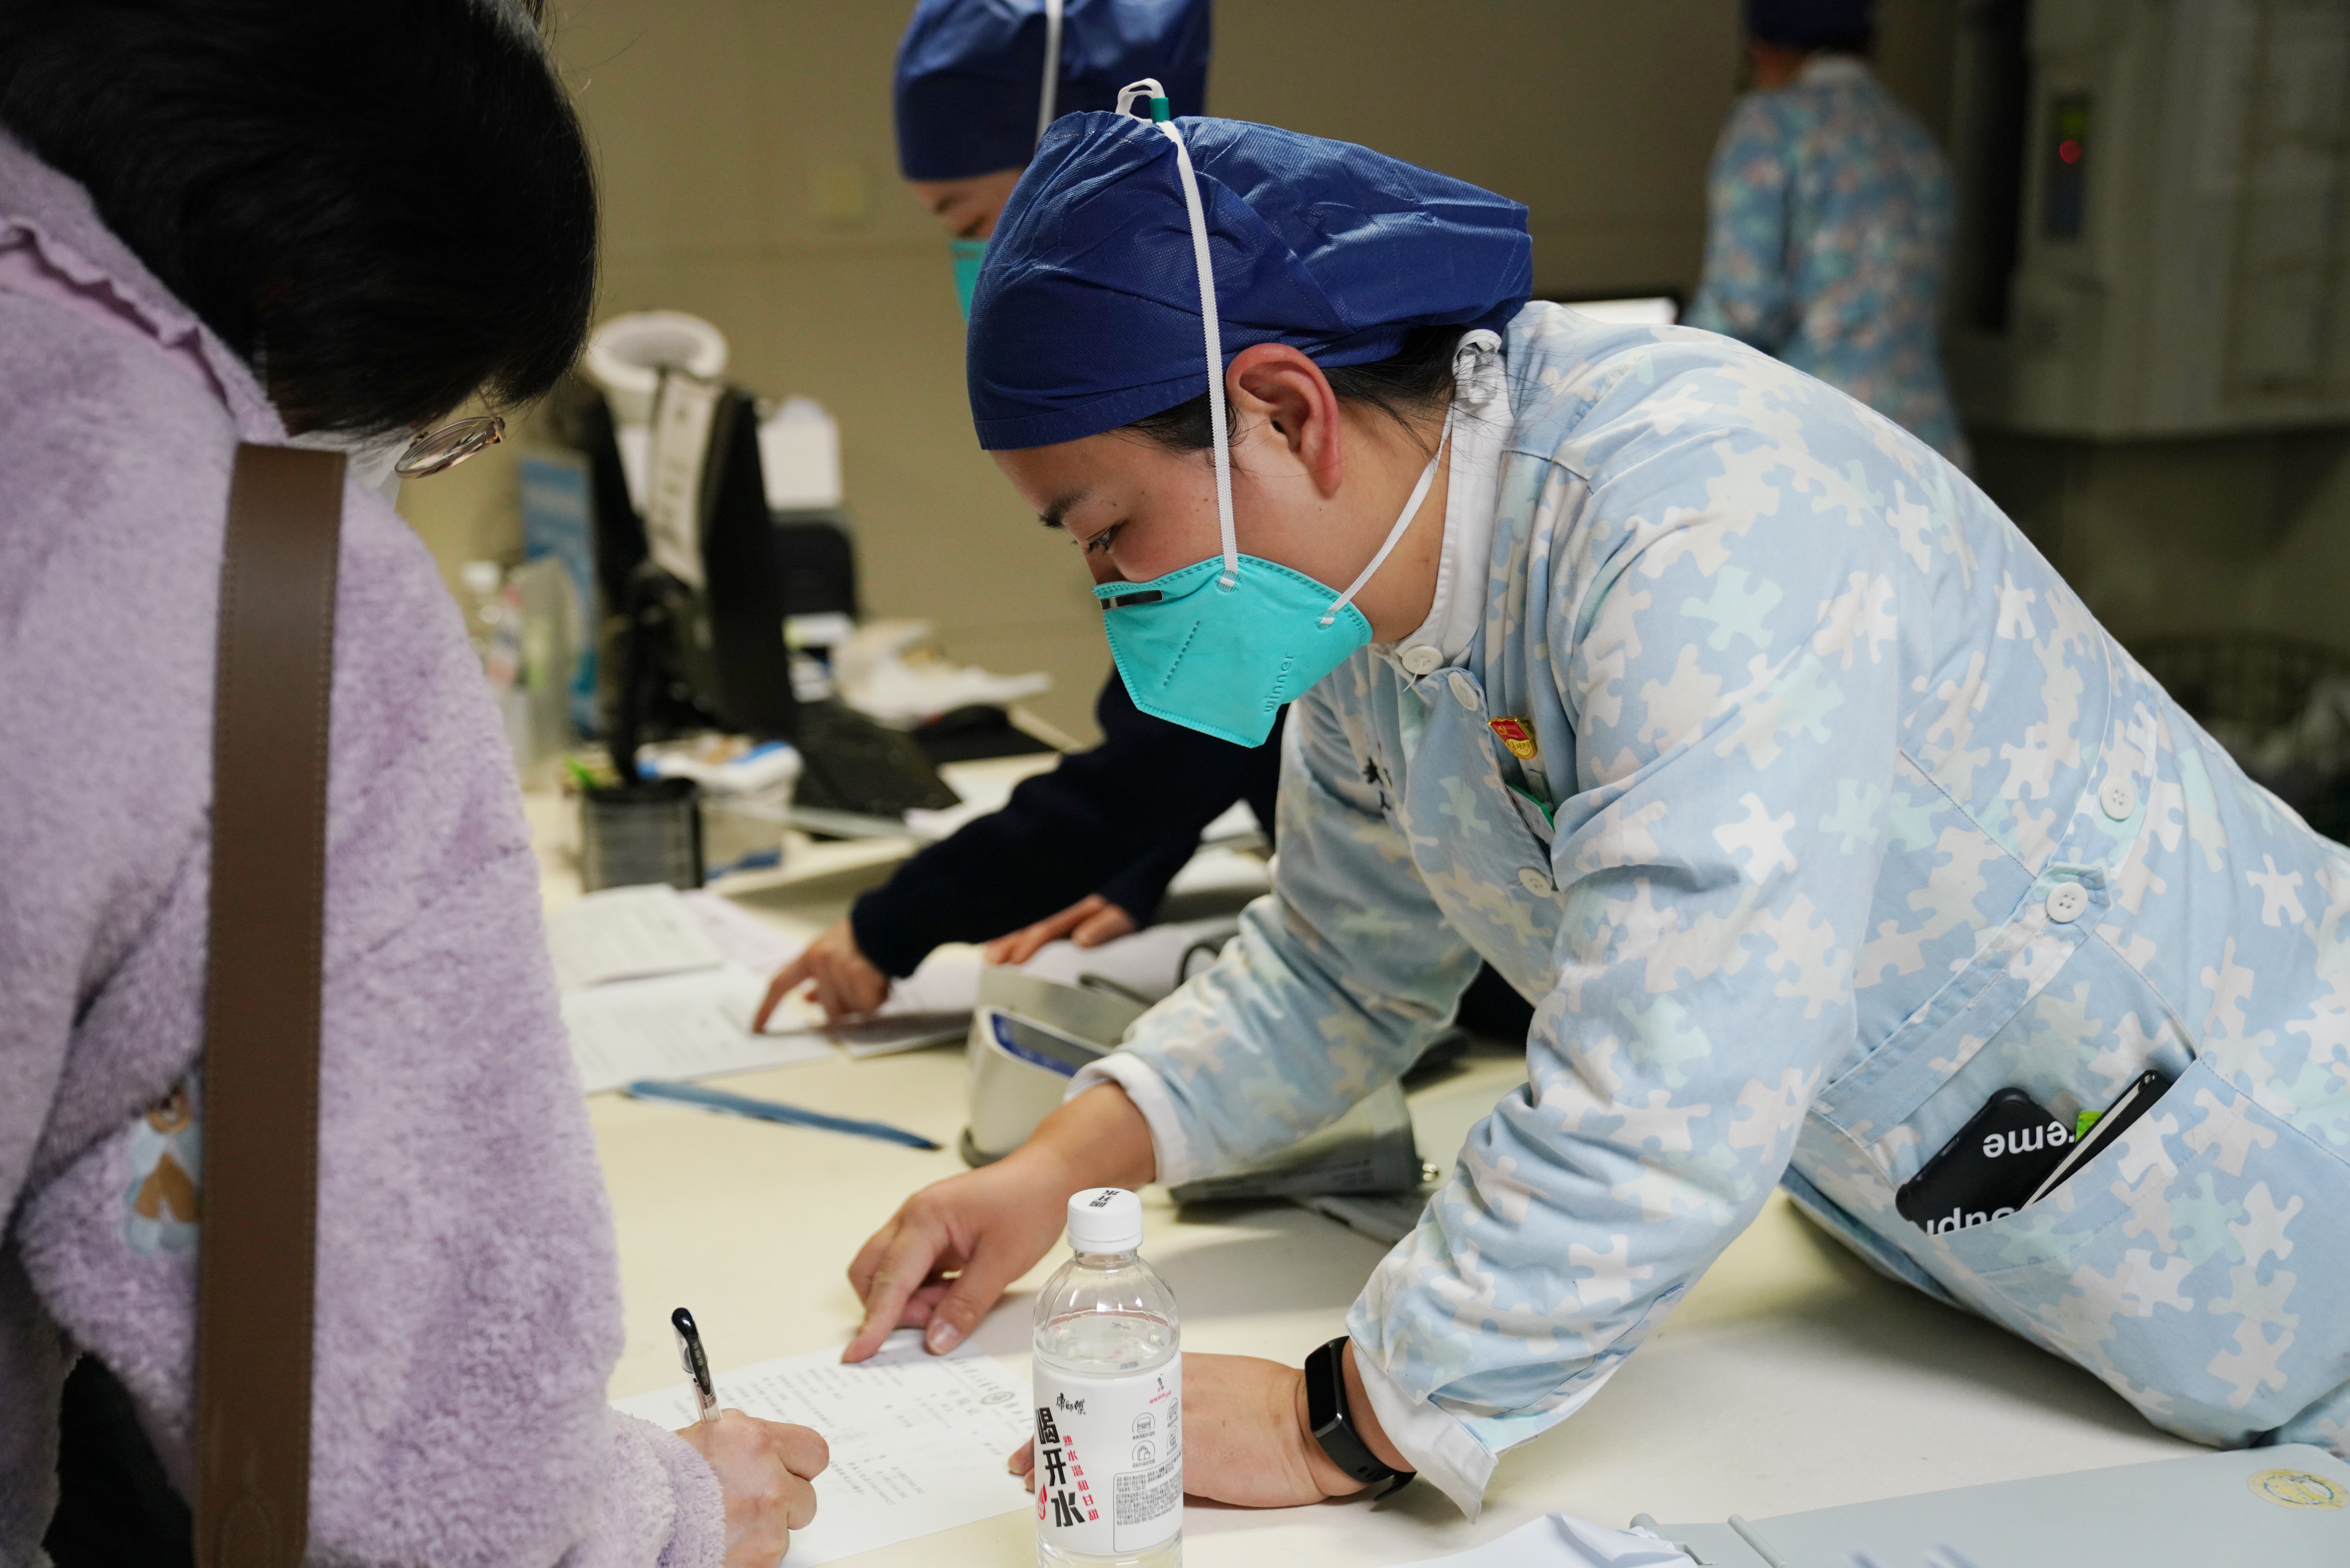 武汉大学人民医院产科护士长陈春丽一晚上两度用上止痛栓 守护 25 名孕产妇安全